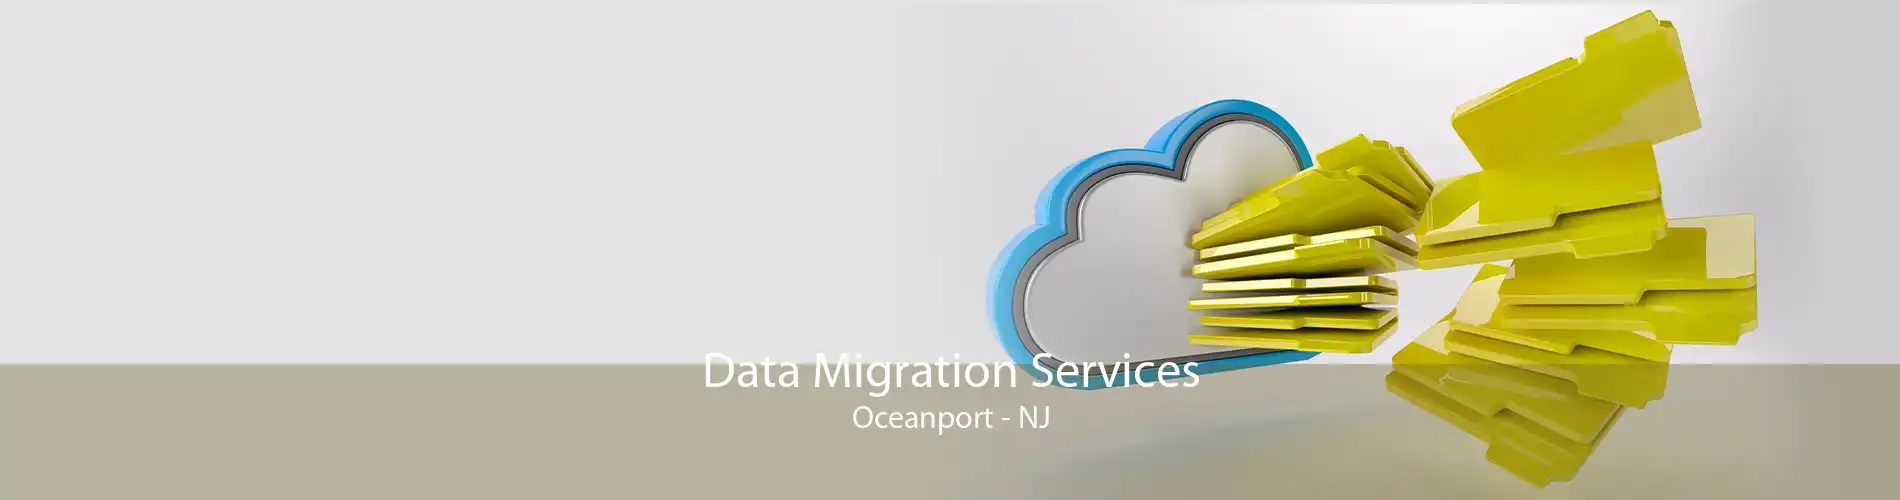 Data Migration Services Oceanport - NJ